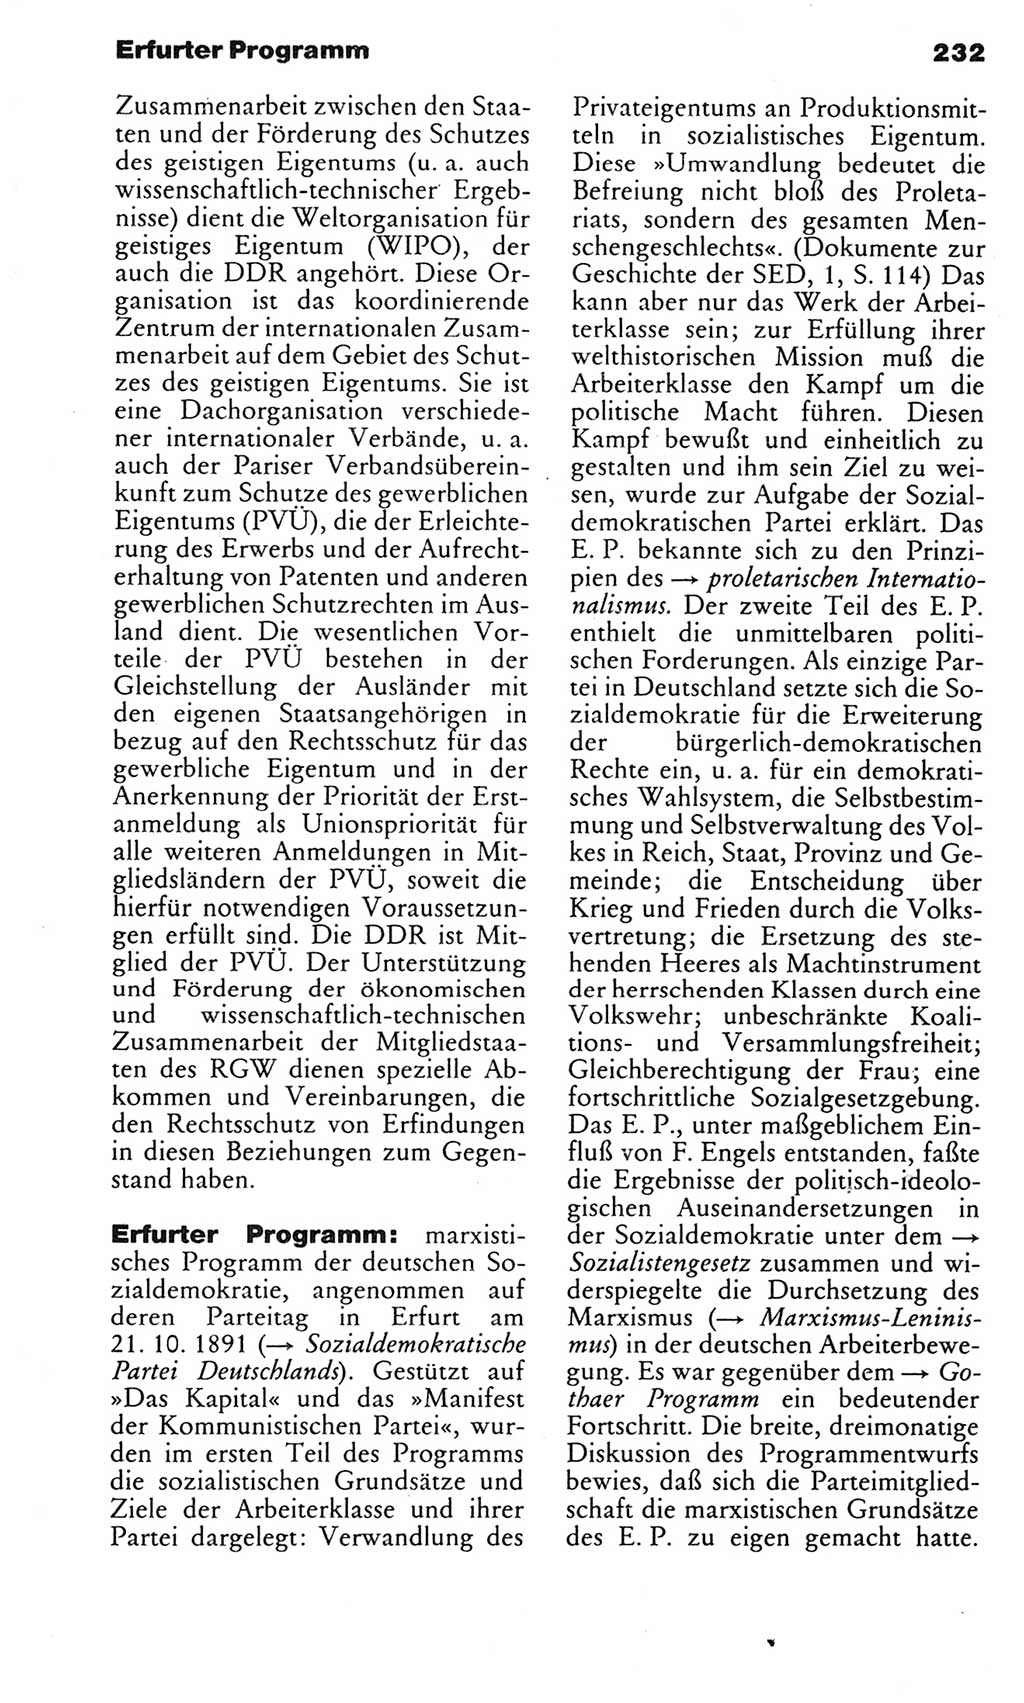 Kleines politisches Wörterbuch [Deutsche Demokratische Republik (DDR)] 1983, Seite 232 (Kl. pol. Wb. DDR 1983, S. 232)